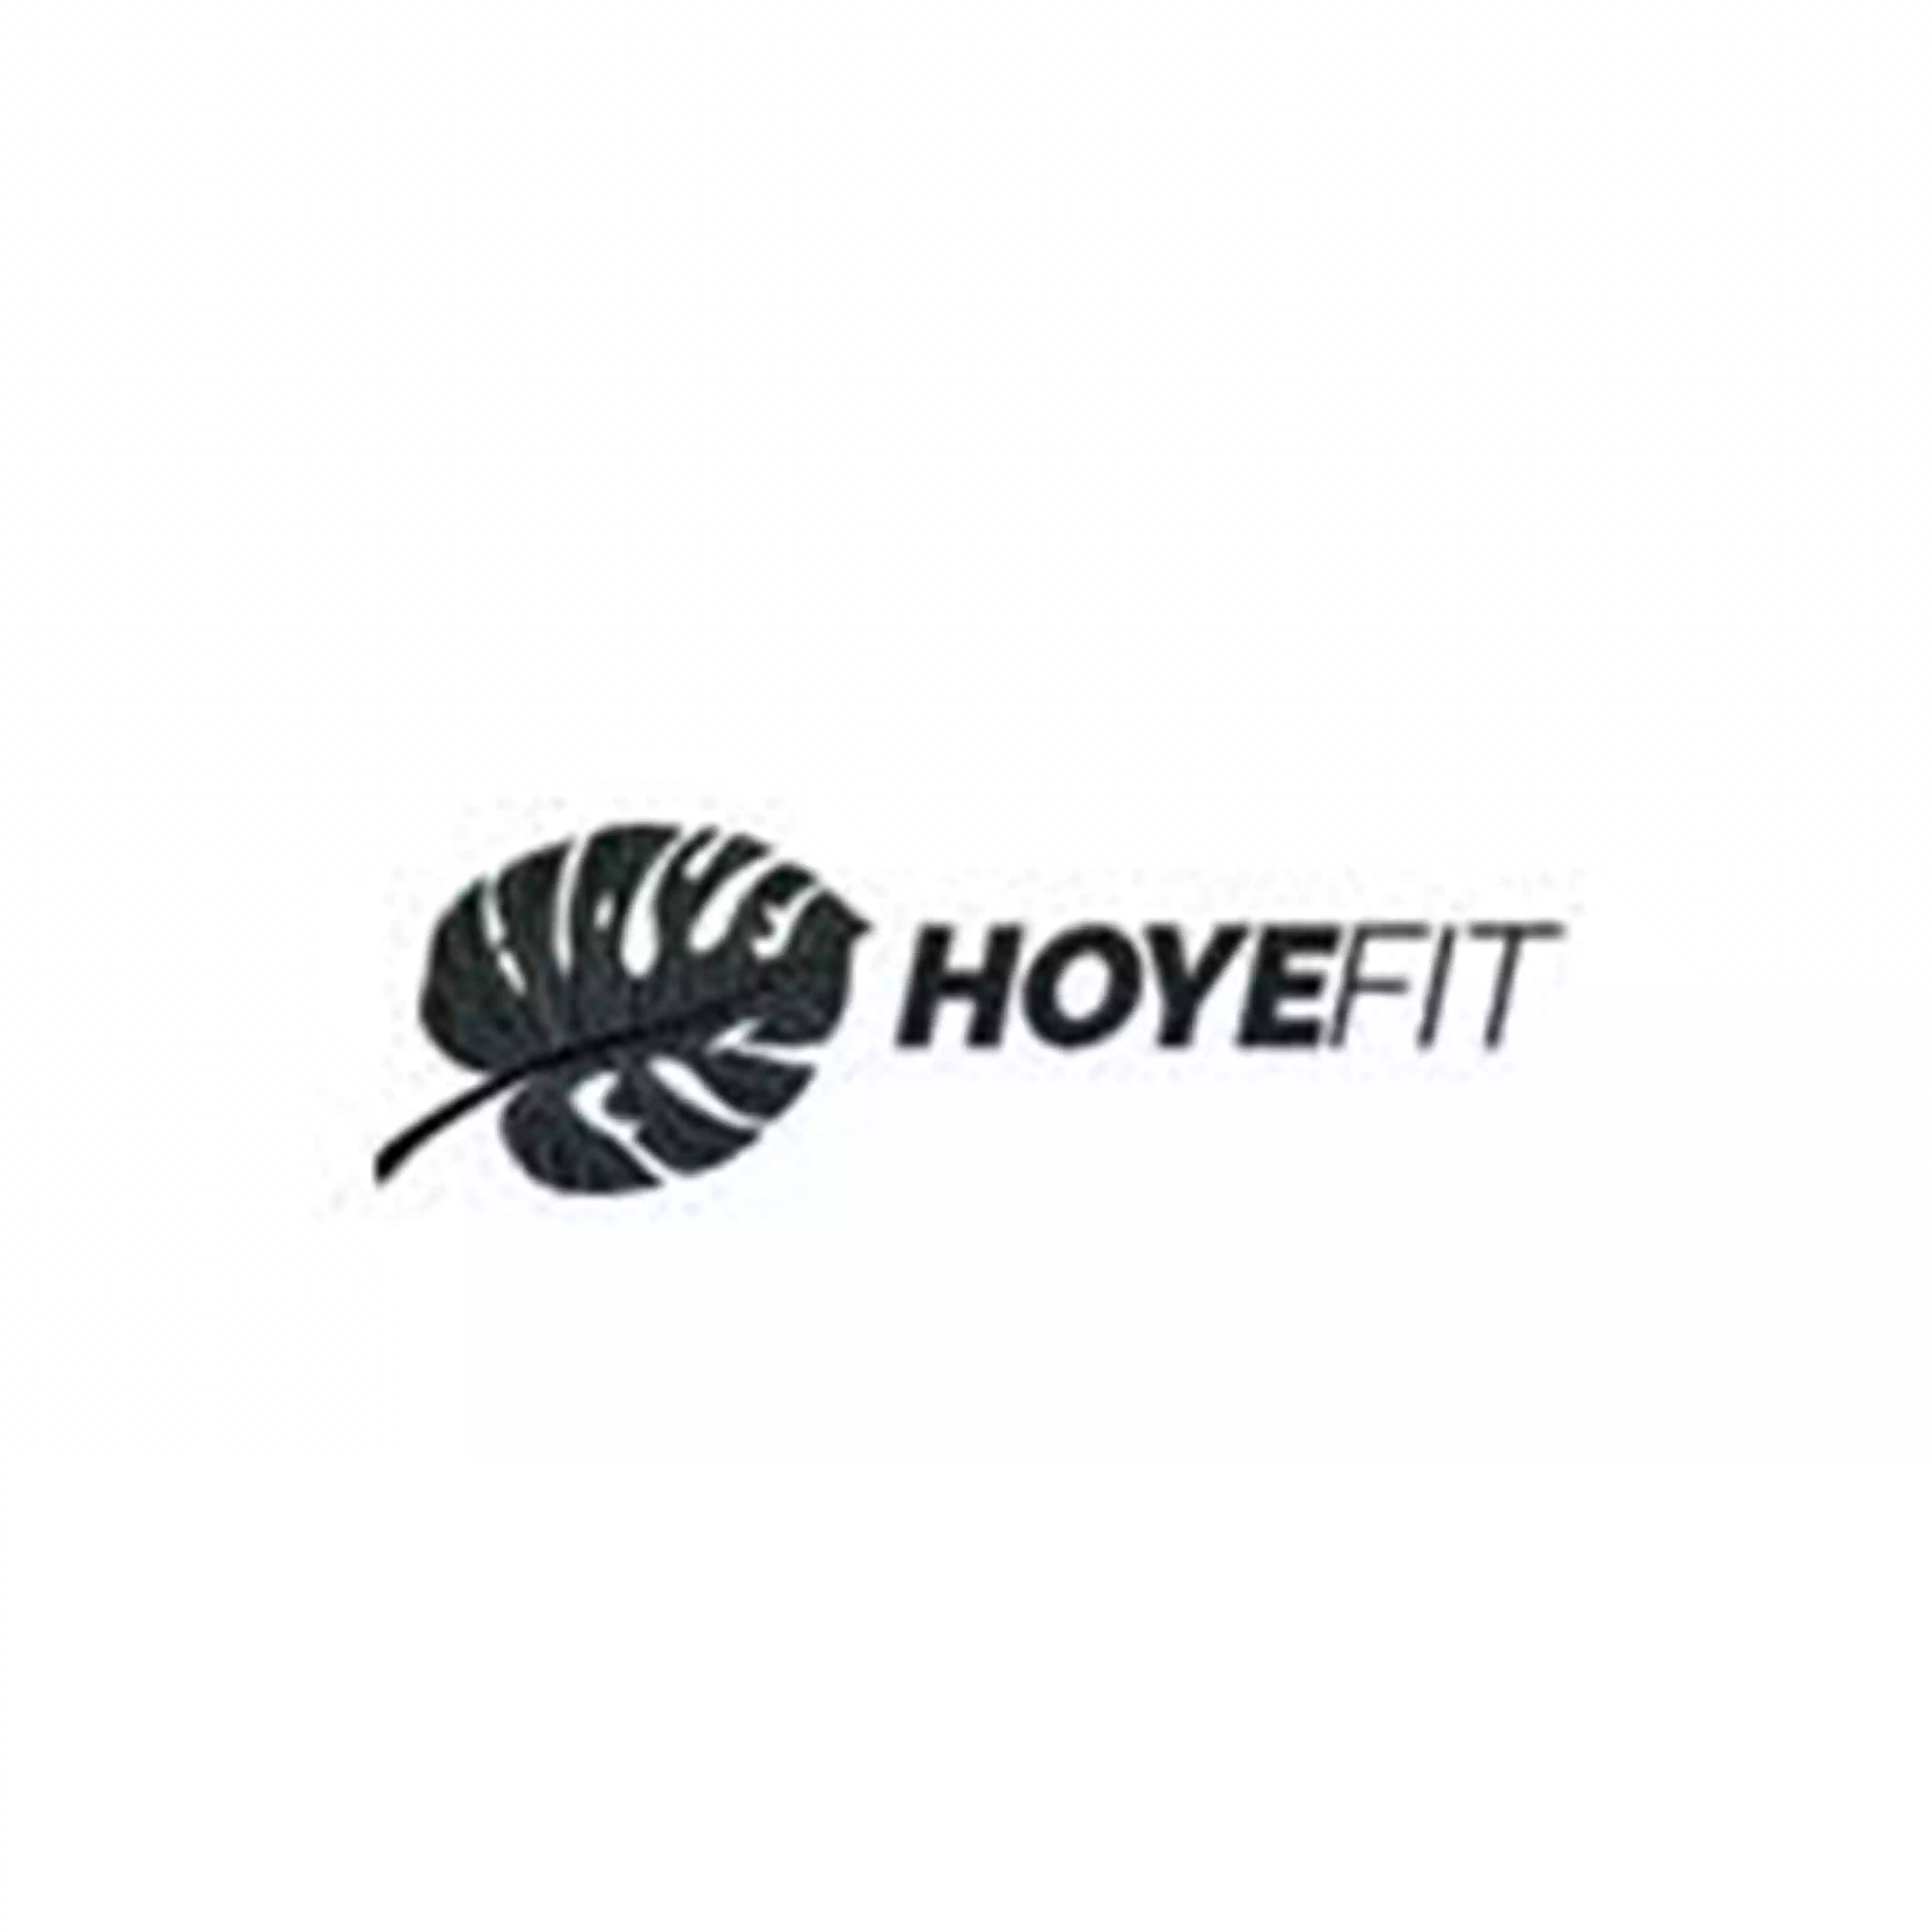 Hoye Fit logo